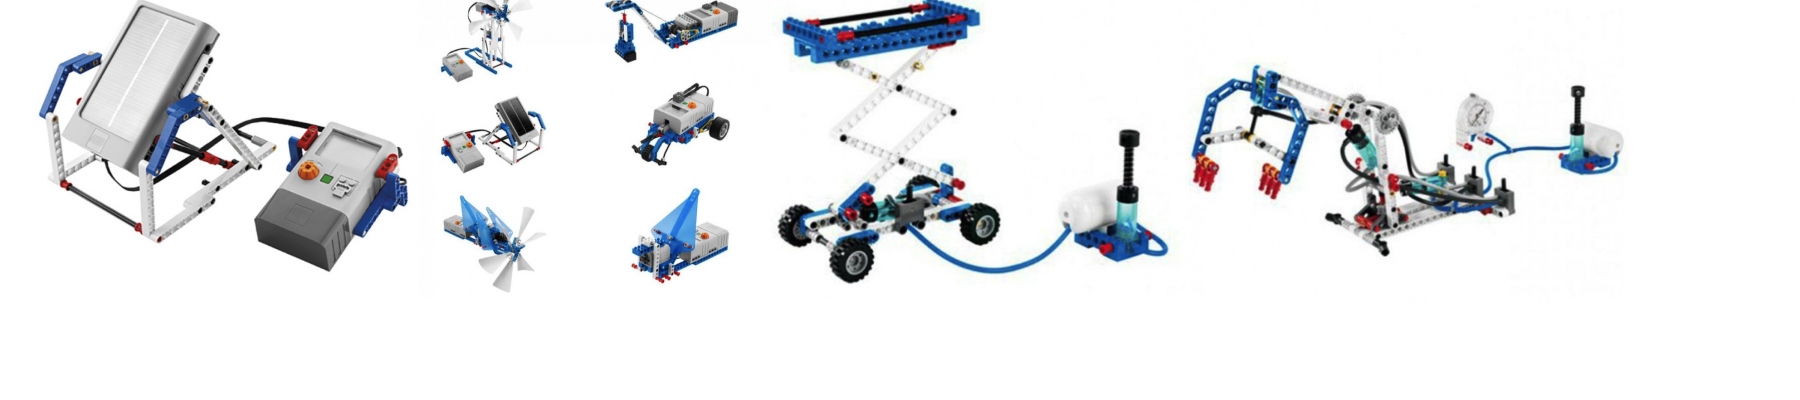 LEGO DUURZAME ENERGIE EN PNEUMATIEK   (9 FEBRUARI)